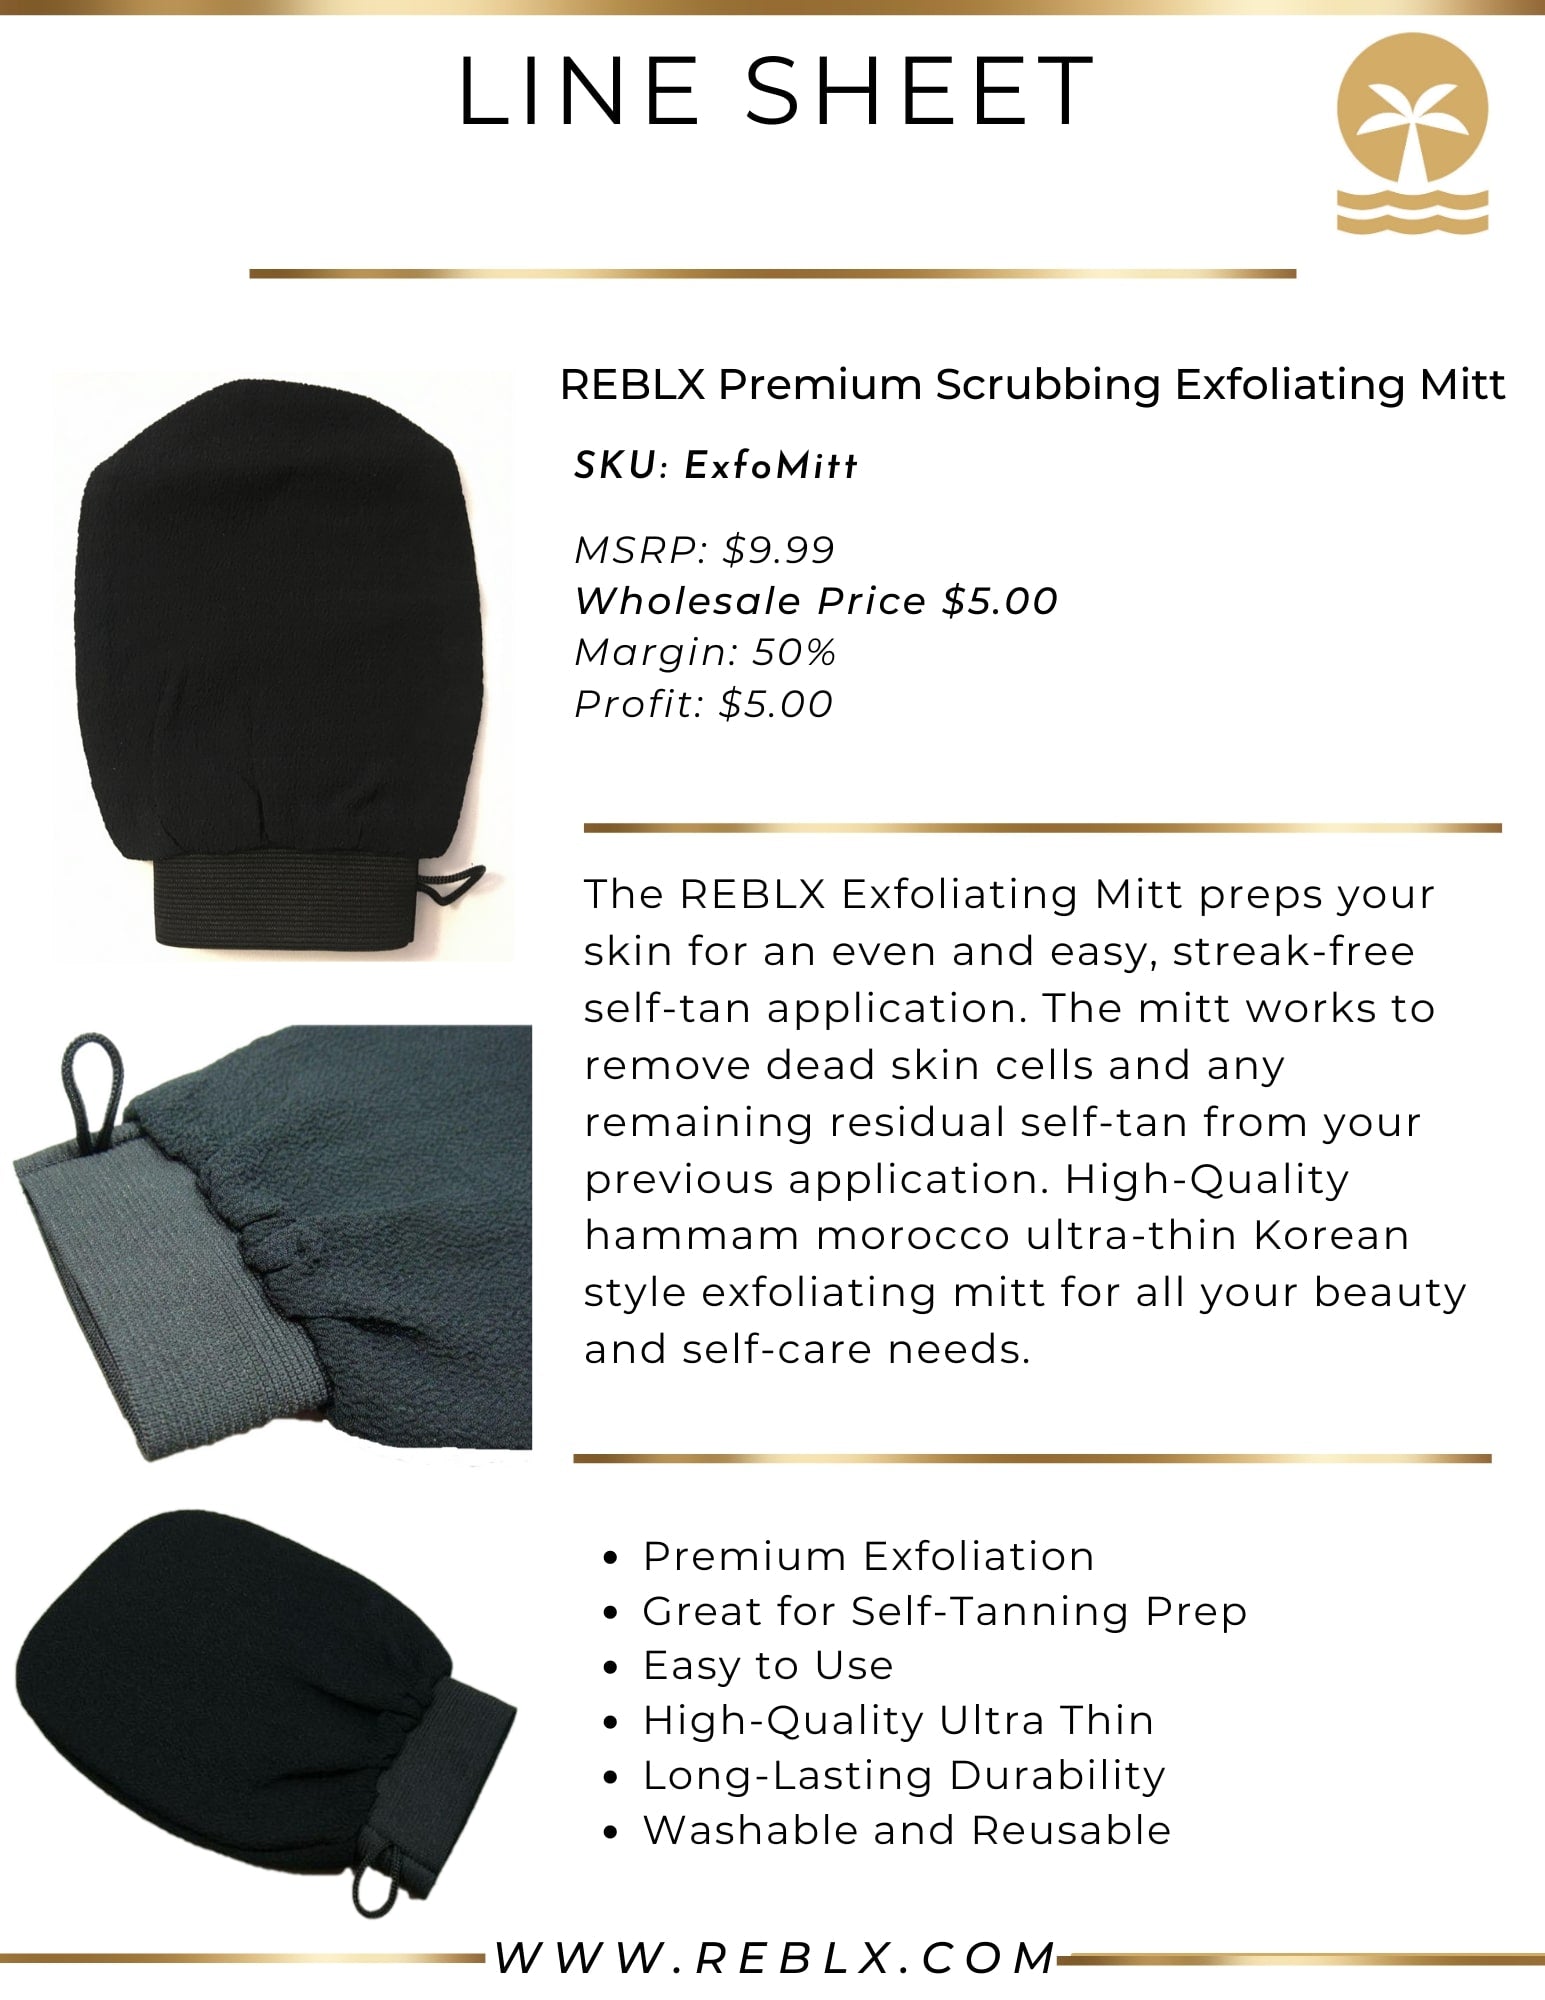 REBLX Product Catalog - REBLX Premium Scrubbing Exfoliating Mitt